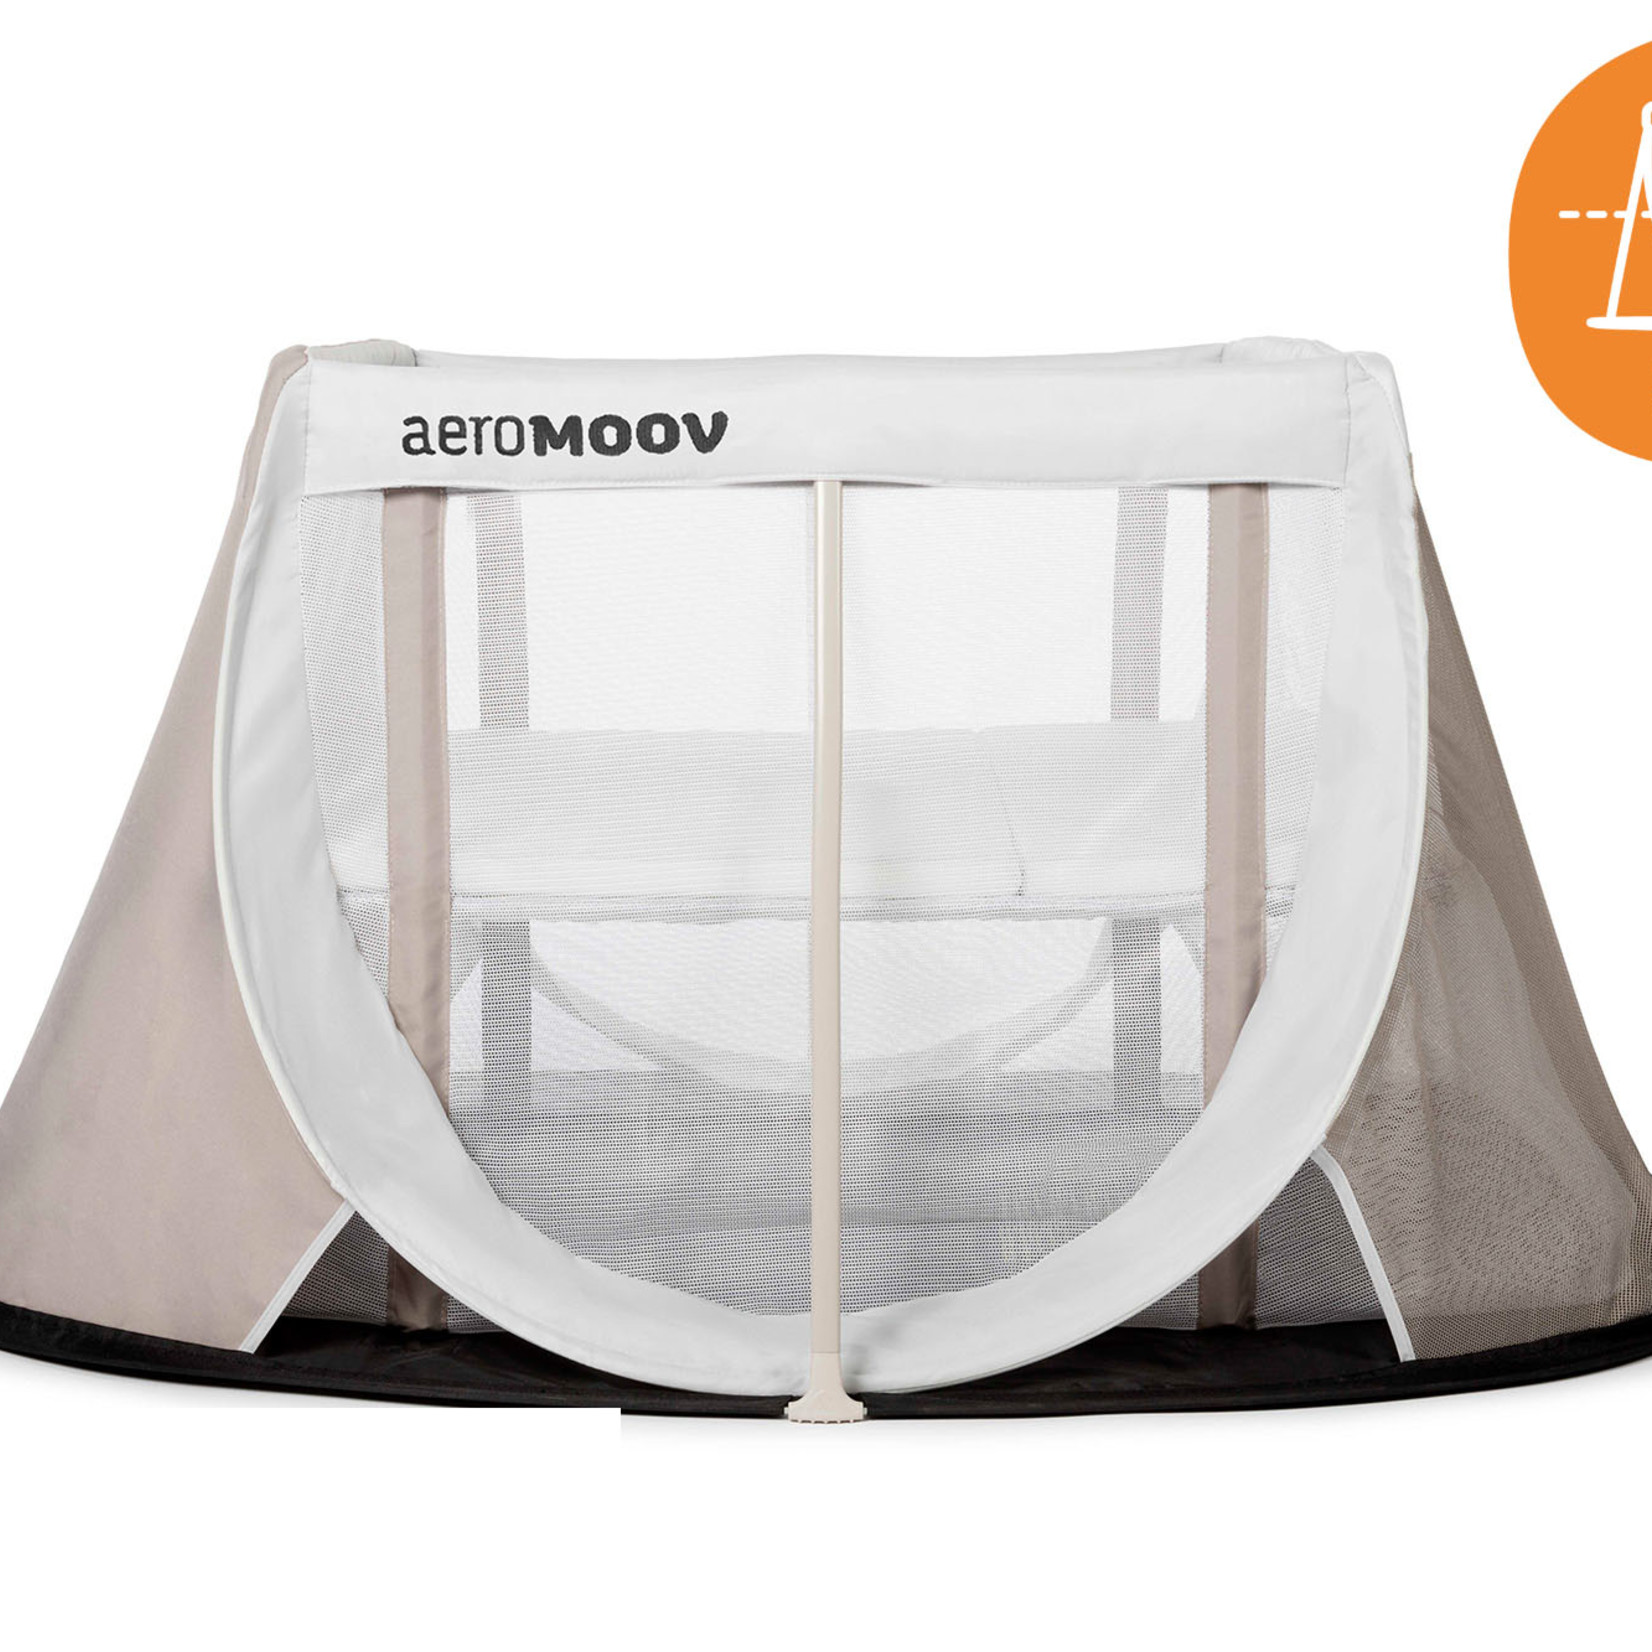 aeromoov Aeromoov instant travel cot - white sand